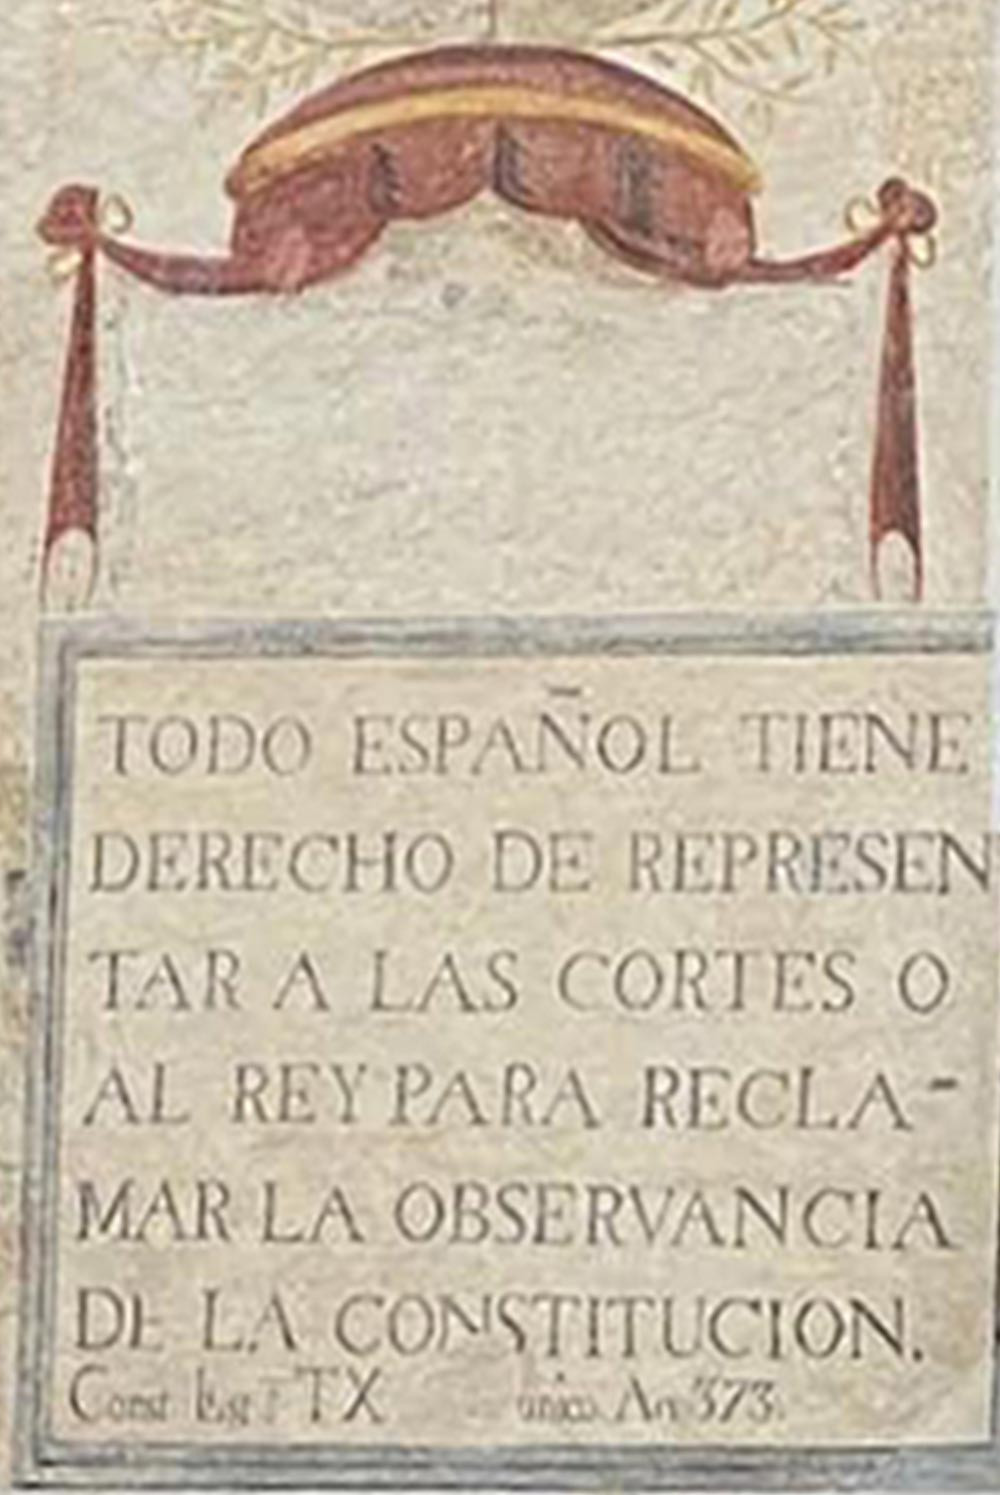 Imagen del grabado escondido bajo una sábana en la fachada del Ayuntamiento de Arenys de Mar